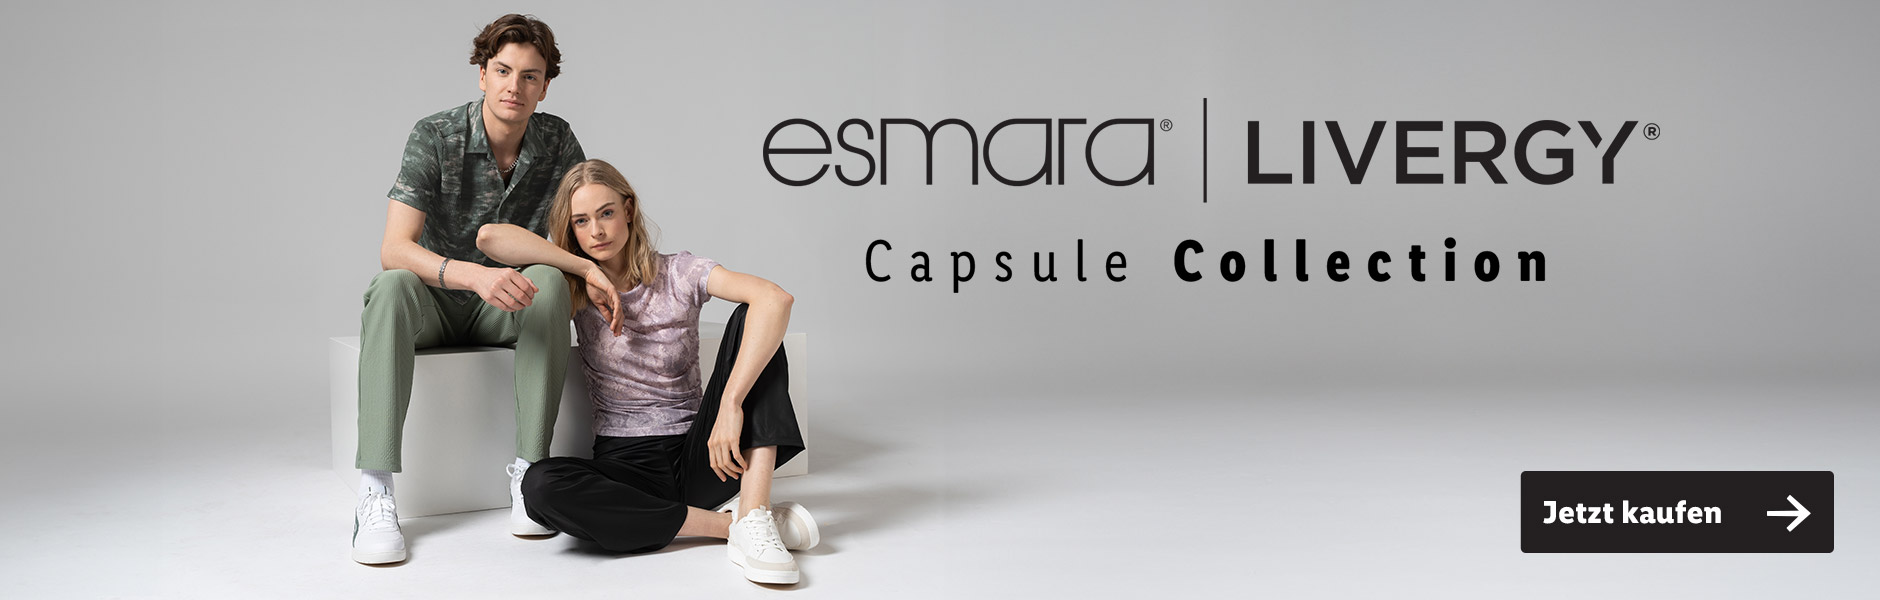 esmara capsule collection